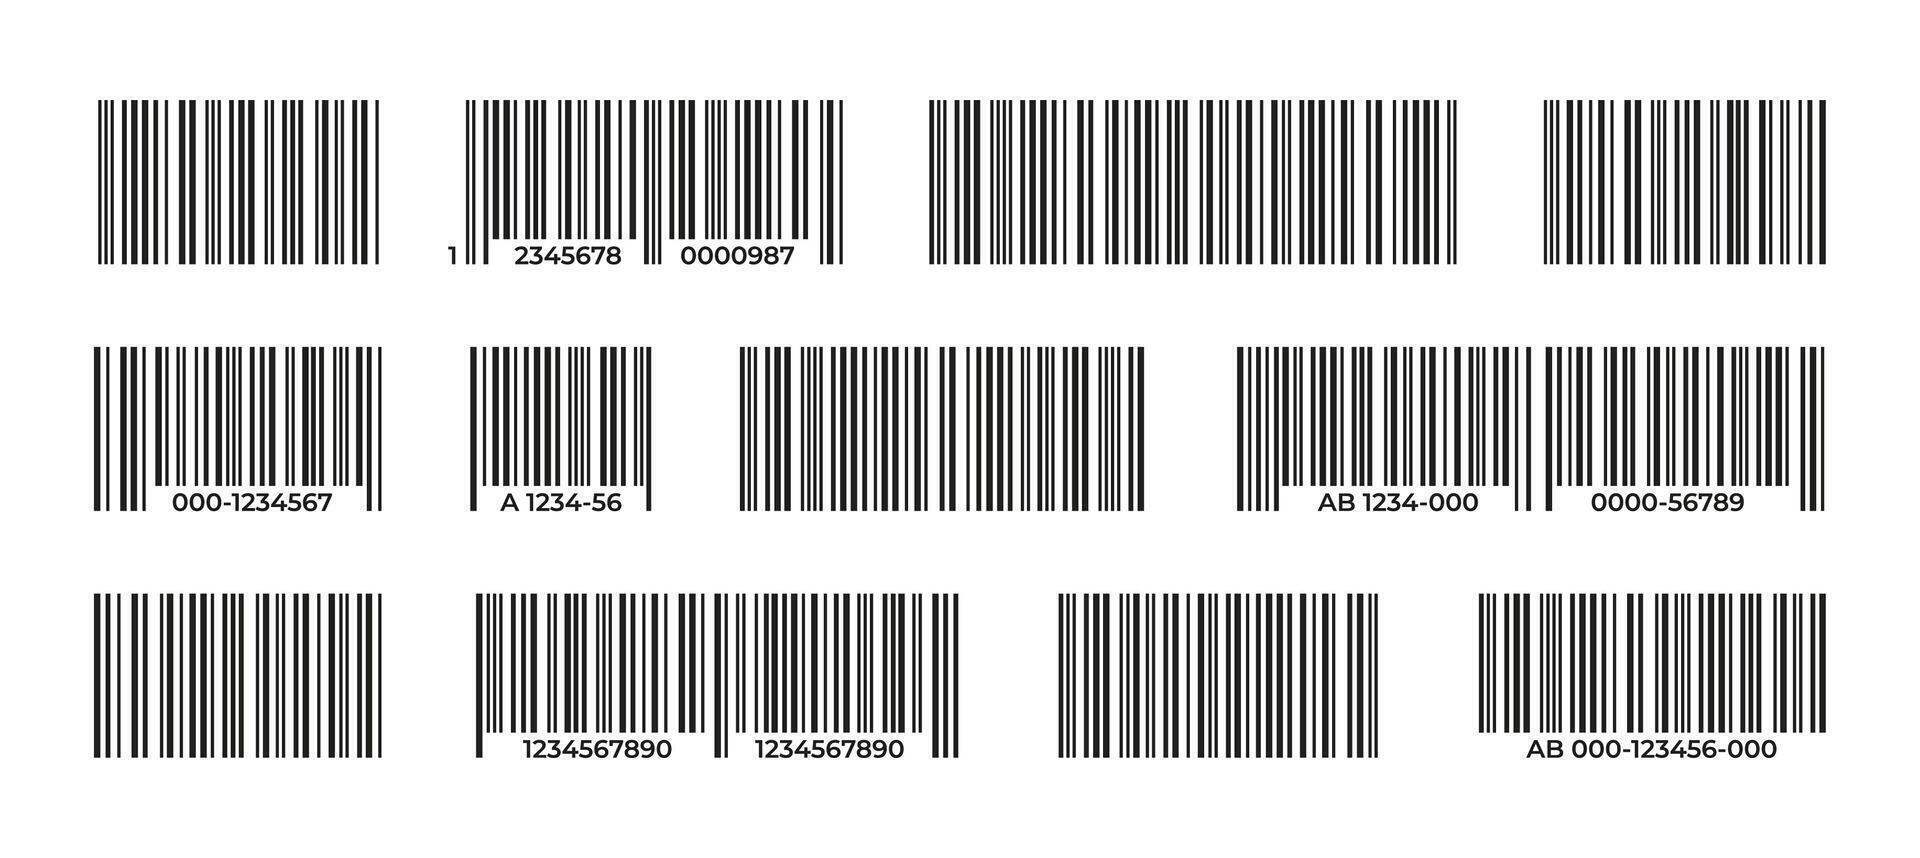 Barcodes Sammlung. schwarz Etikette Barcode zum Produkt Identifikation, Lebensmittelgeschäft Preis Schild, Supermarkt Verteilung System mit Reihe Daten Elemente. Vektor einstellen